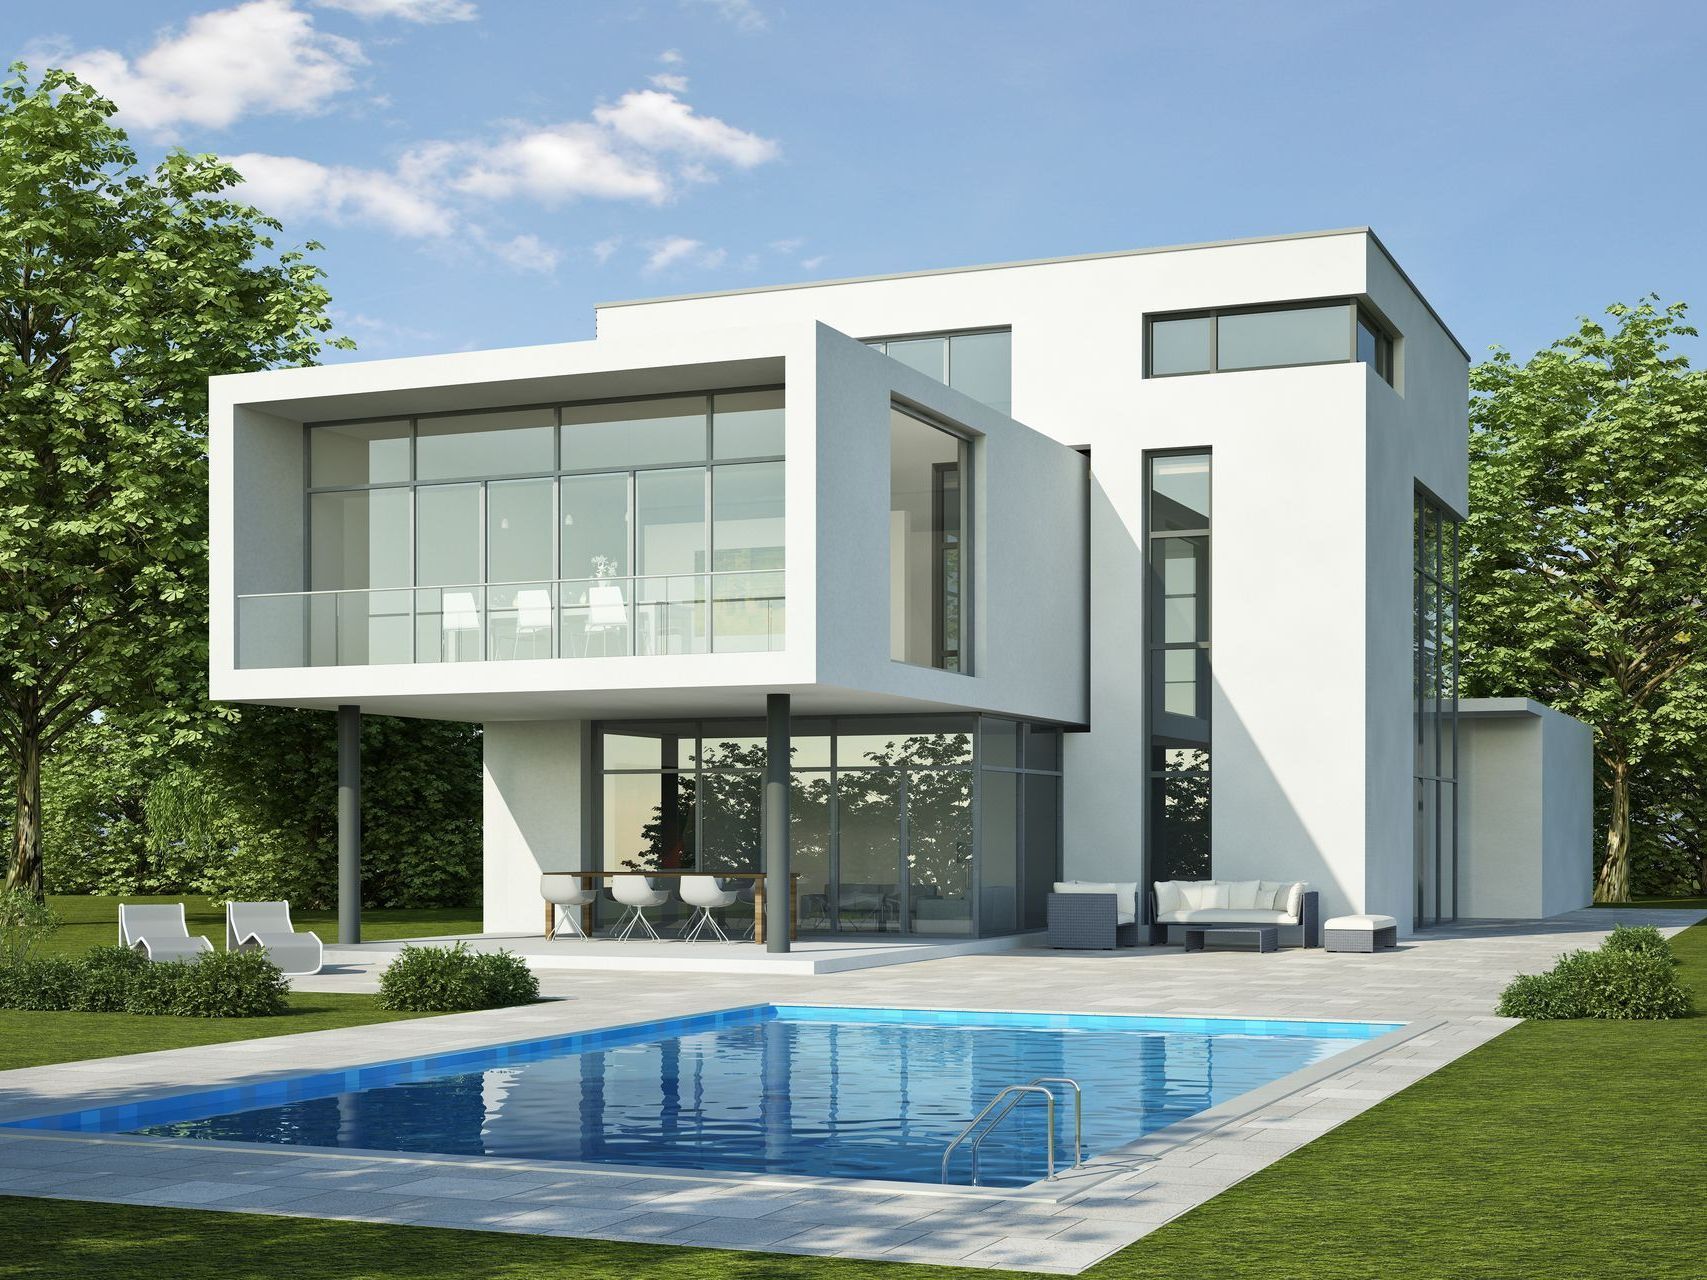 ein modernes Haus mit einem großen Swimmingpool davor.